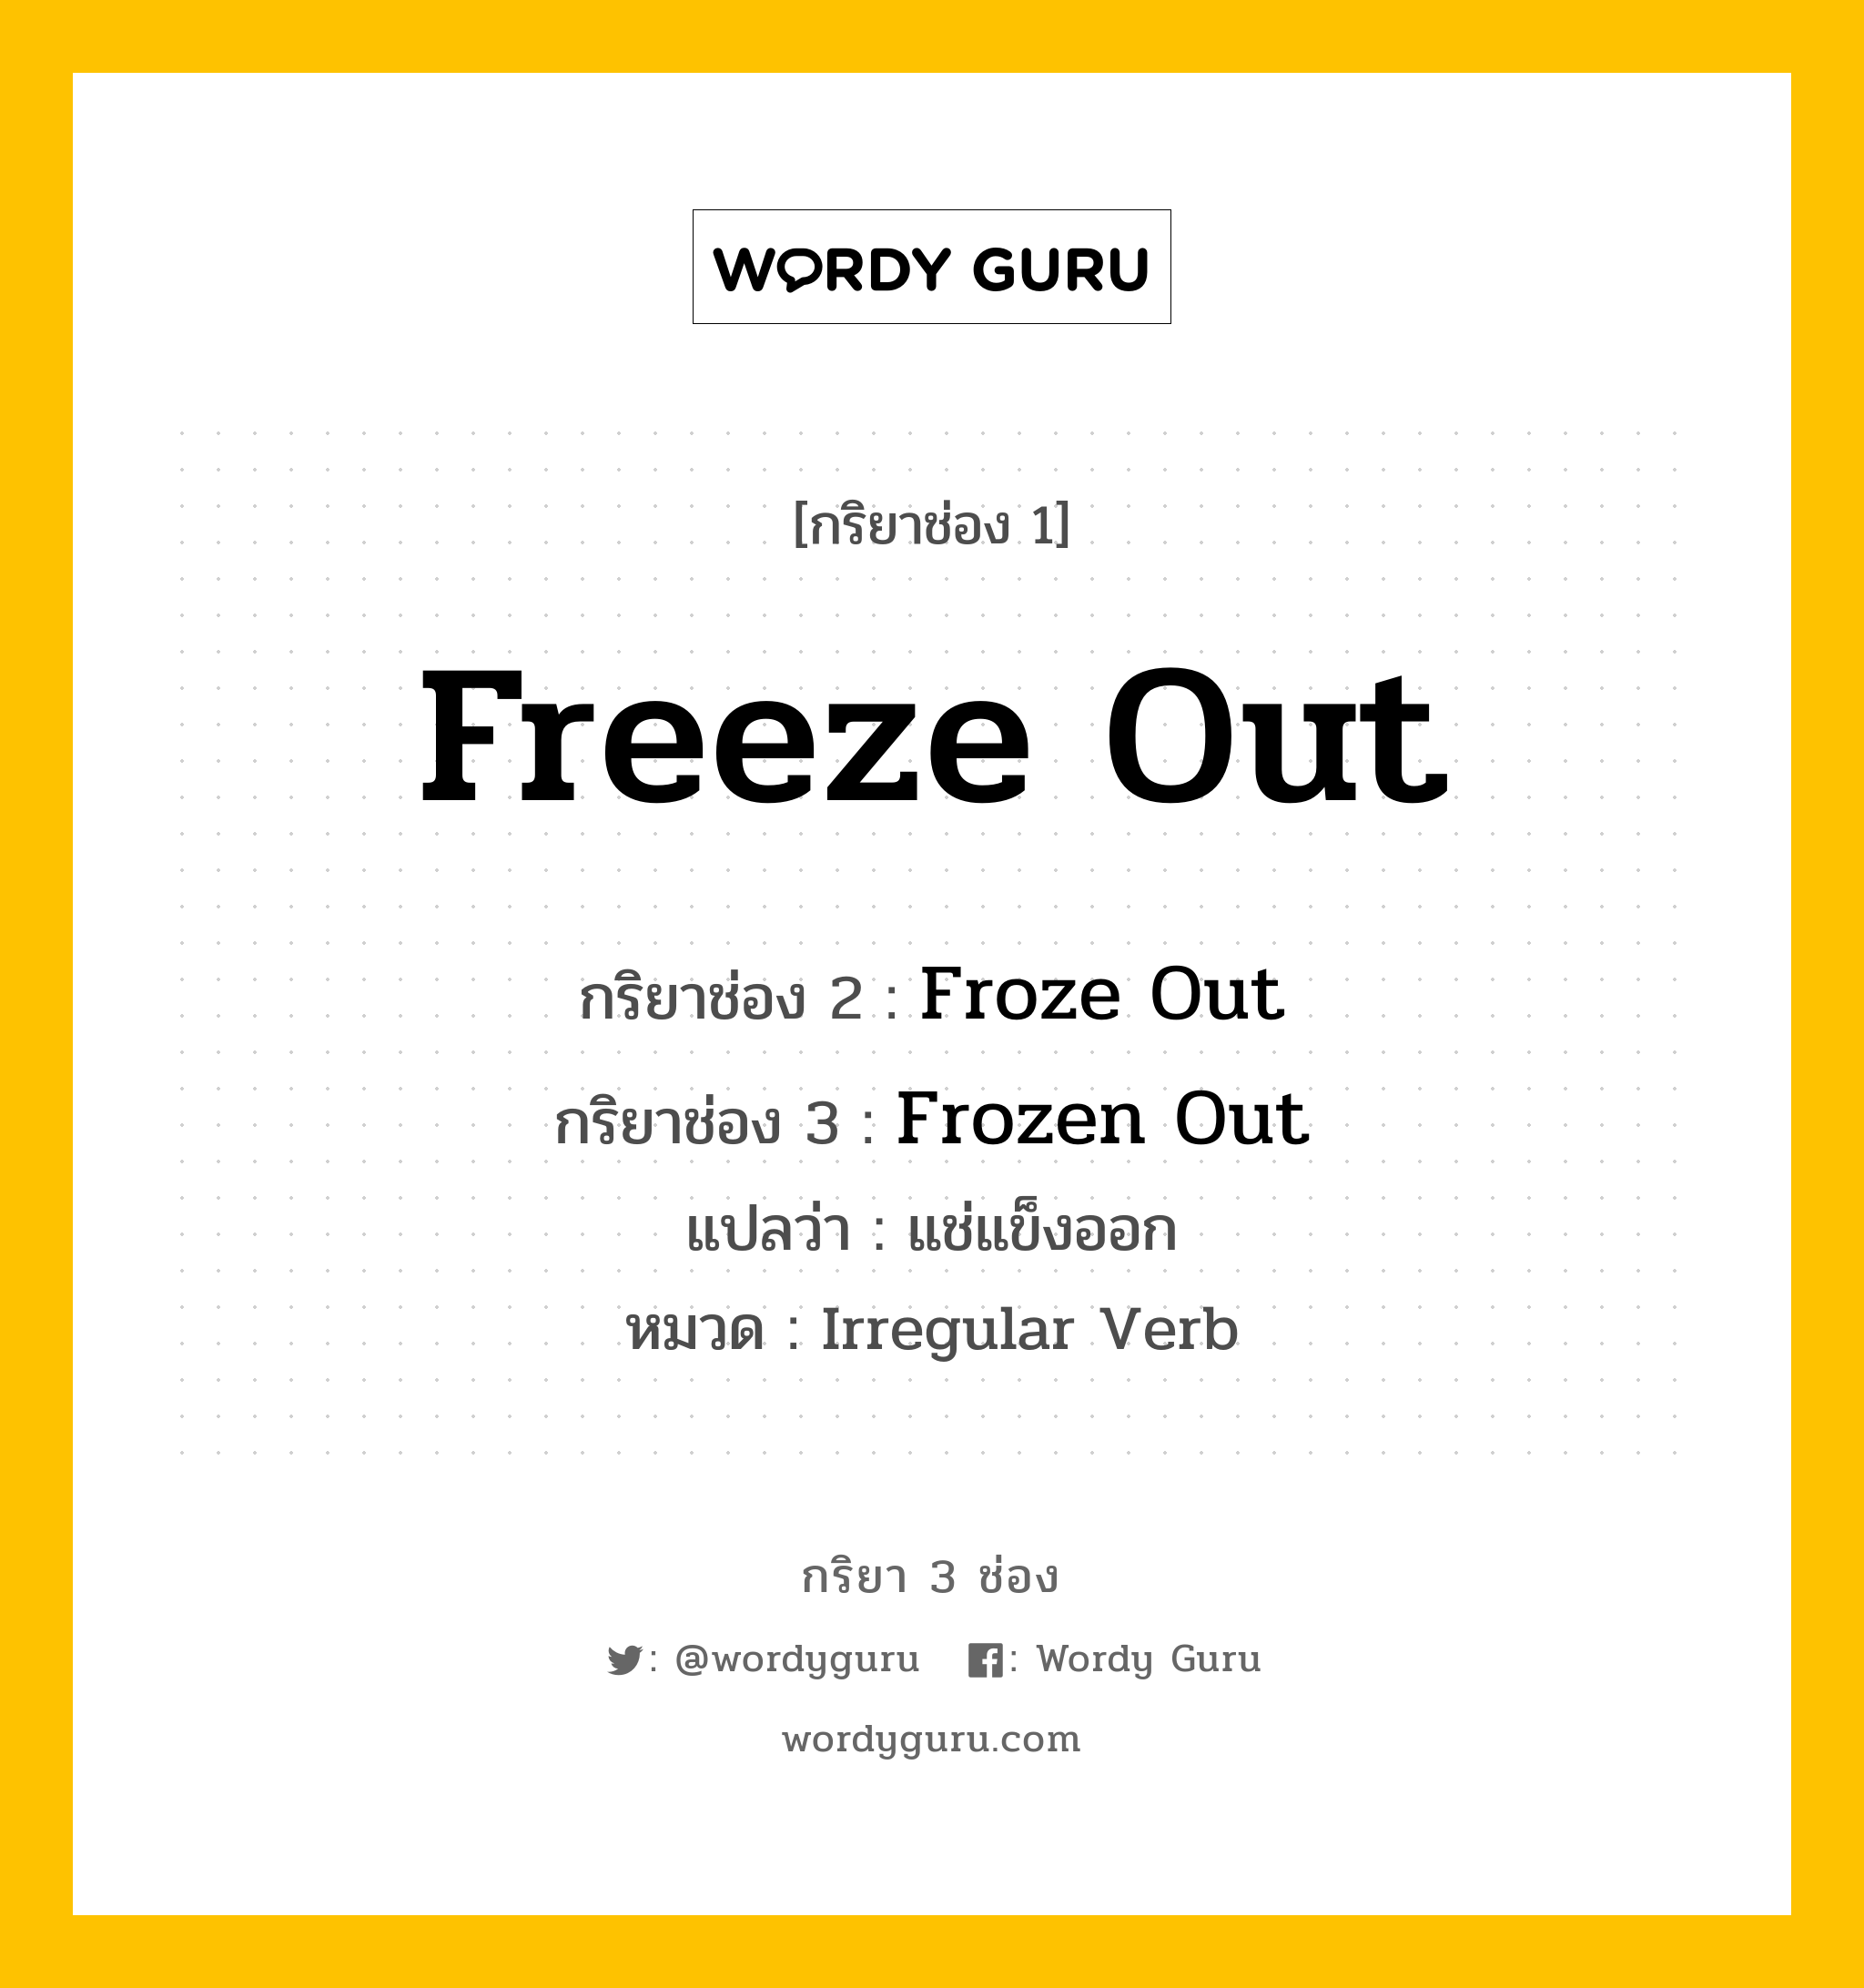 กริยา 3 ช่อง: Freeze Out ช่อง 2 Freeze Out ช่อง 3 คืออะไร, กริยาช่อง 1 Freeze Out กริยาช่อง 2 Froze Out กริยาช่อง 3 Frozen Out แปลว่า แช่แข็งออก หมวด Irregular Verb หมวด Irregular Verb